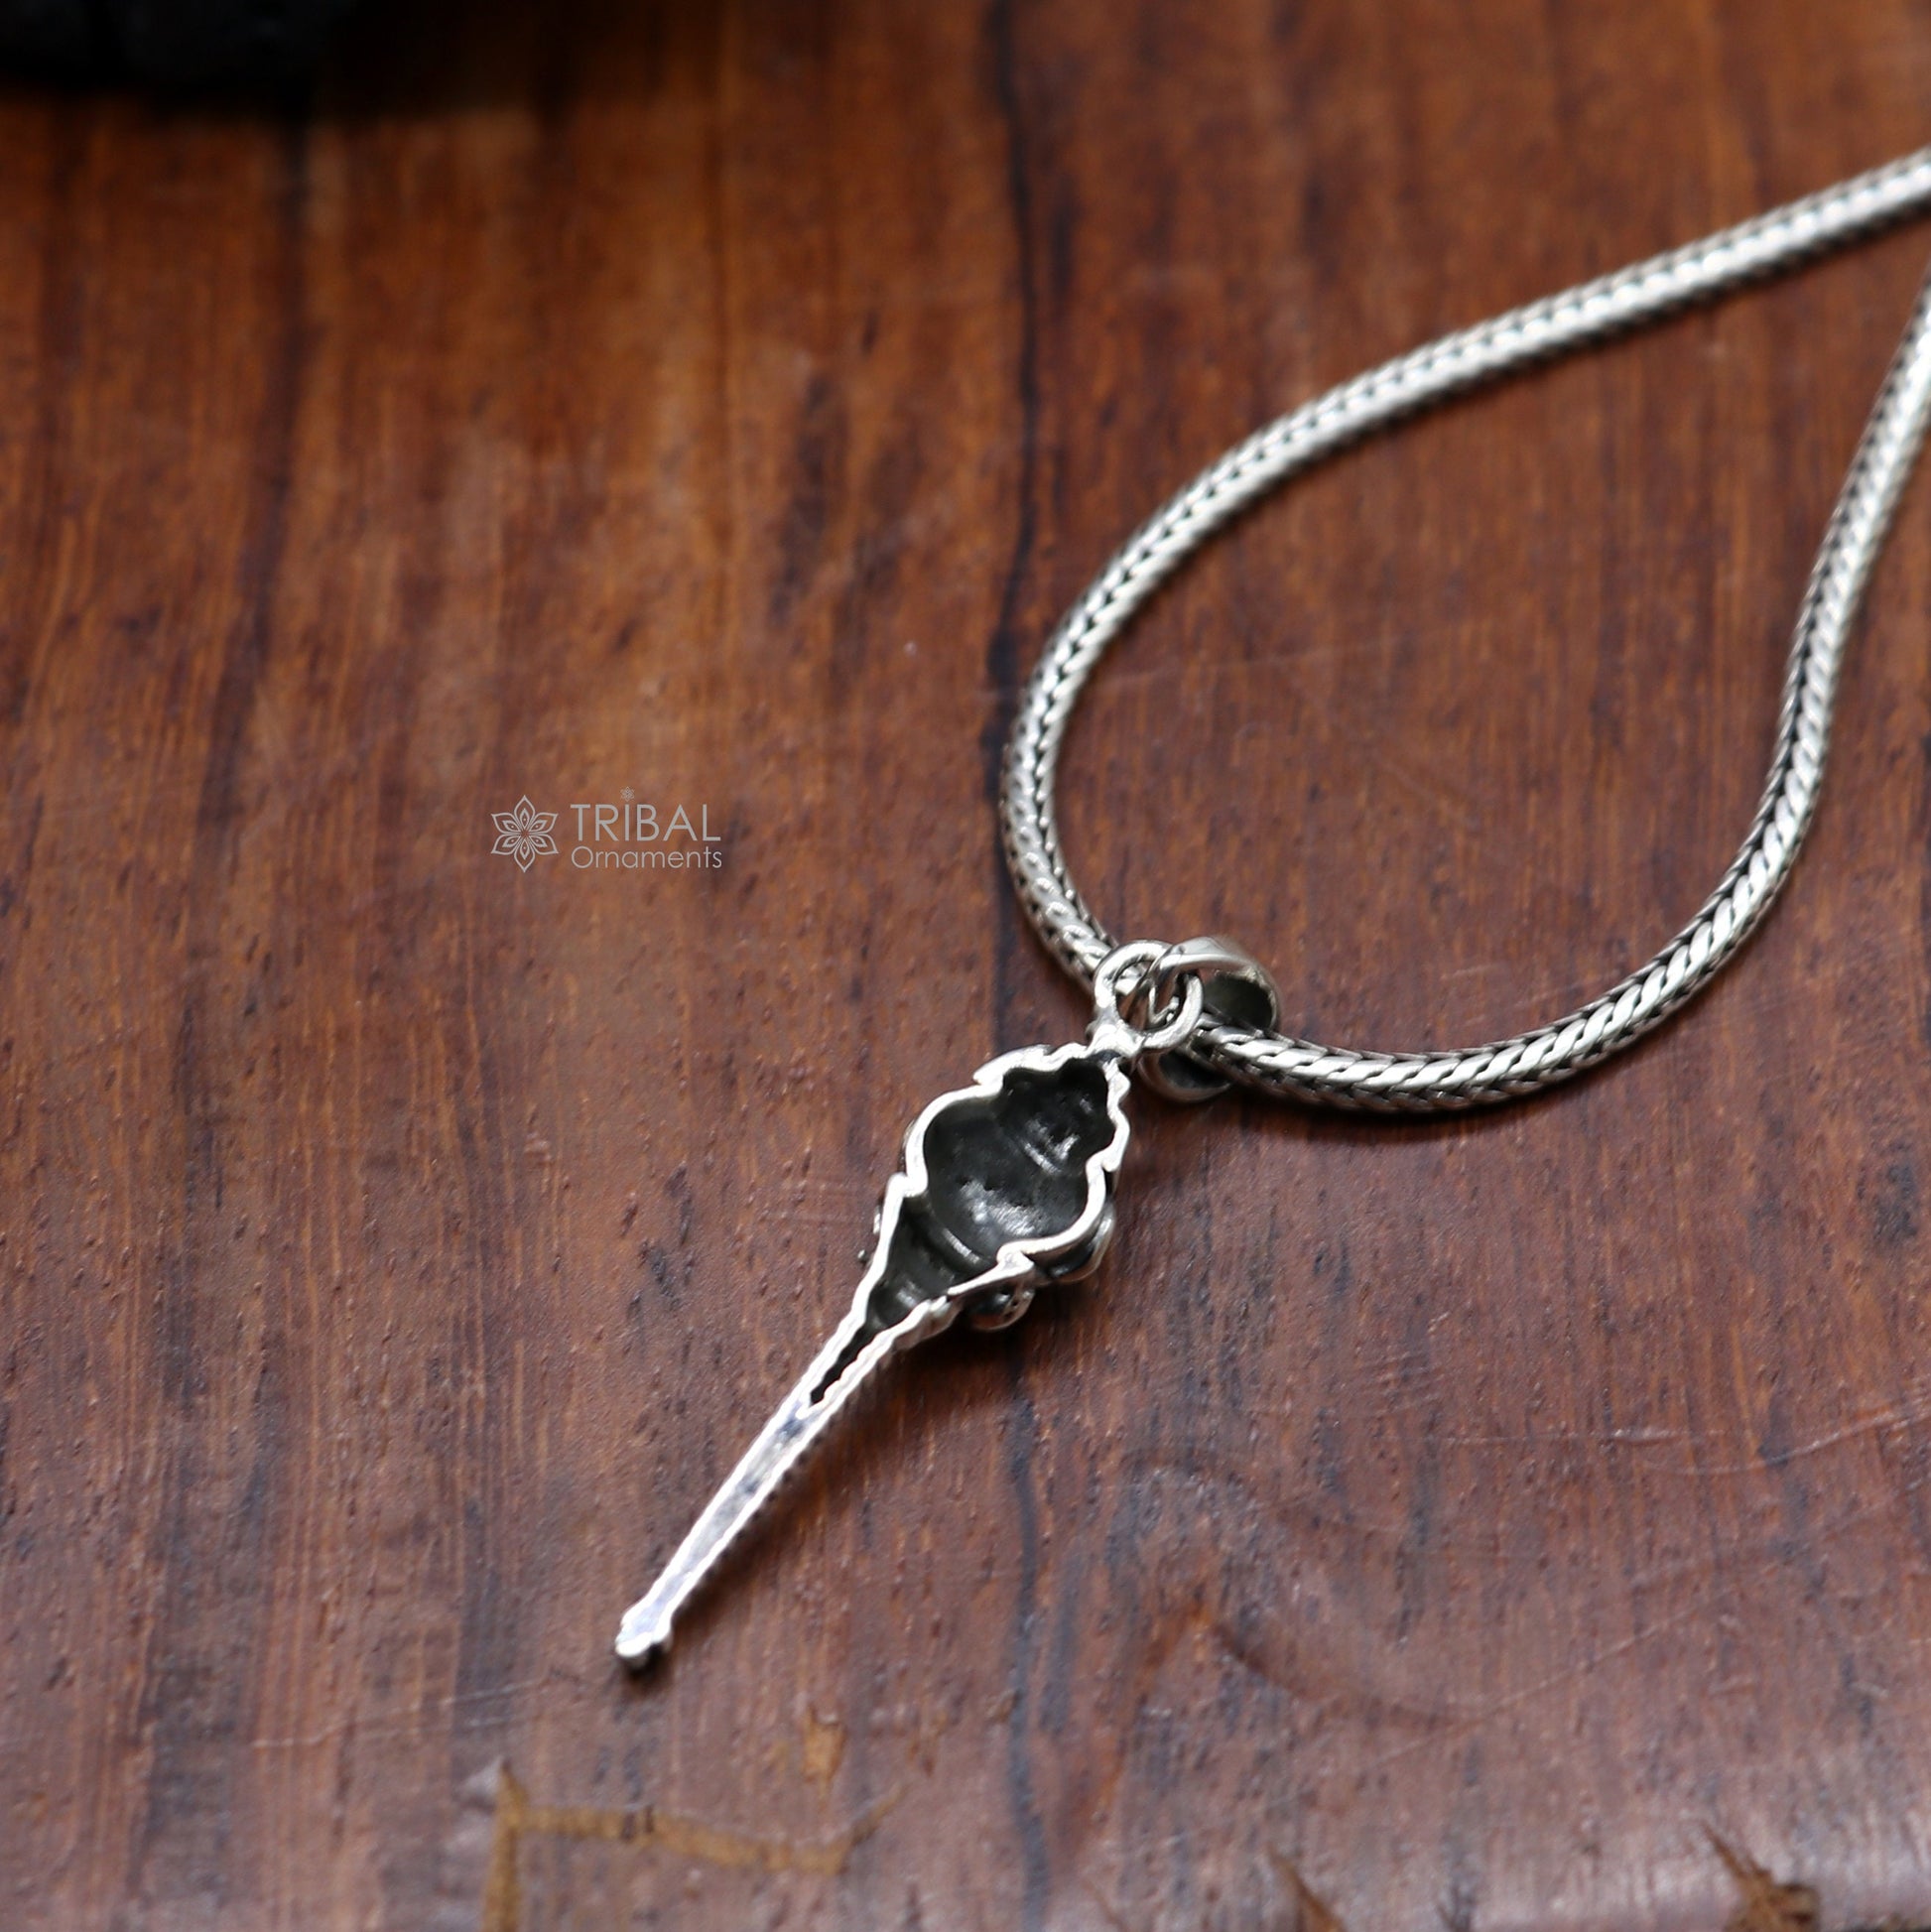 COACH Sterling Silver Padlock Heart Key Necklace in Metallic